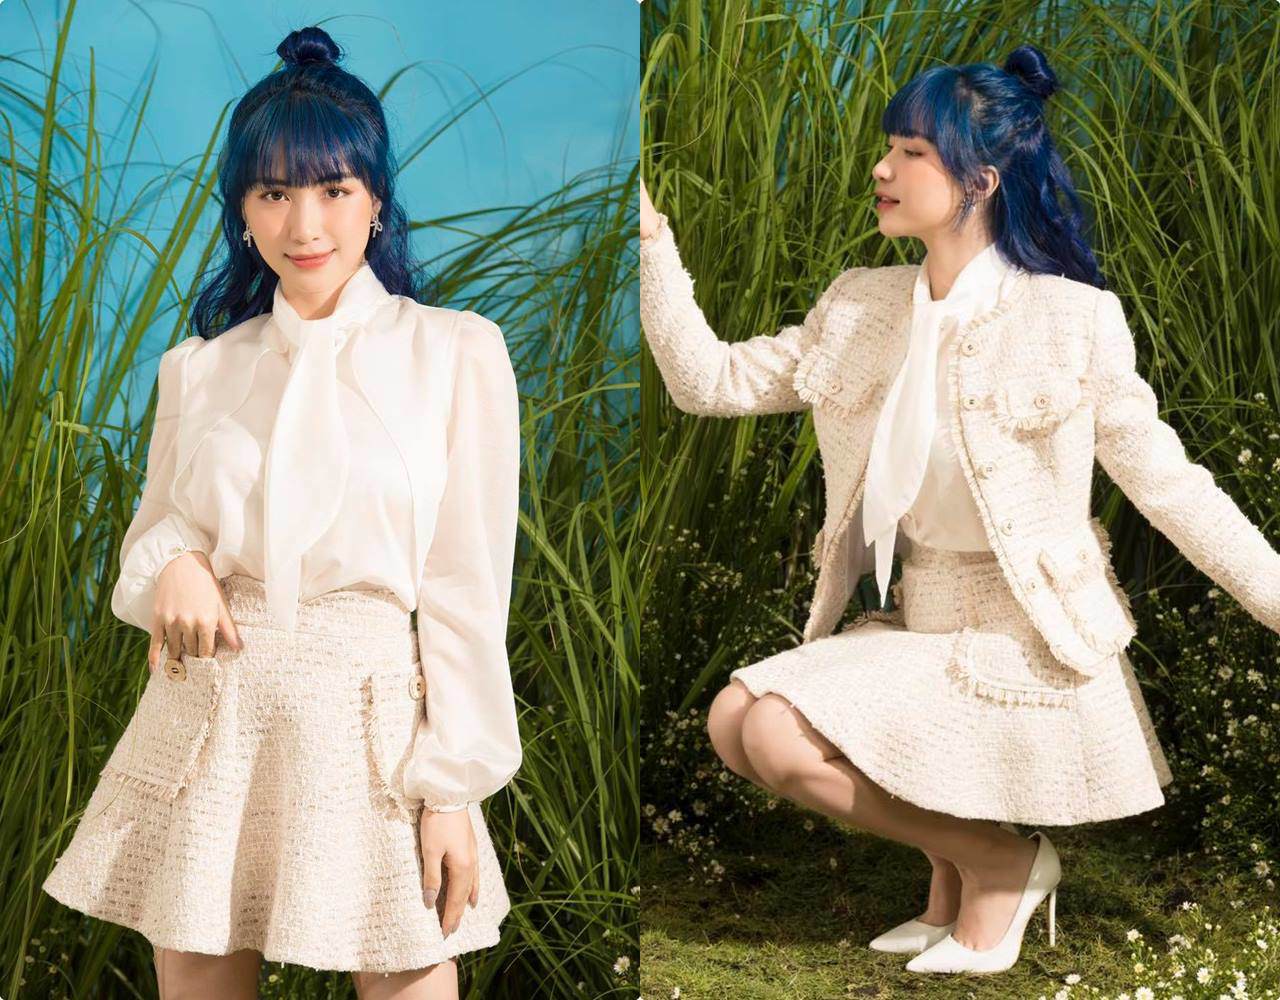 Bao lần lận đận chuyện tóc tai, công chúa Hoà Minzy nay biến hình với mái tóc xanh lạ lẫm - 4